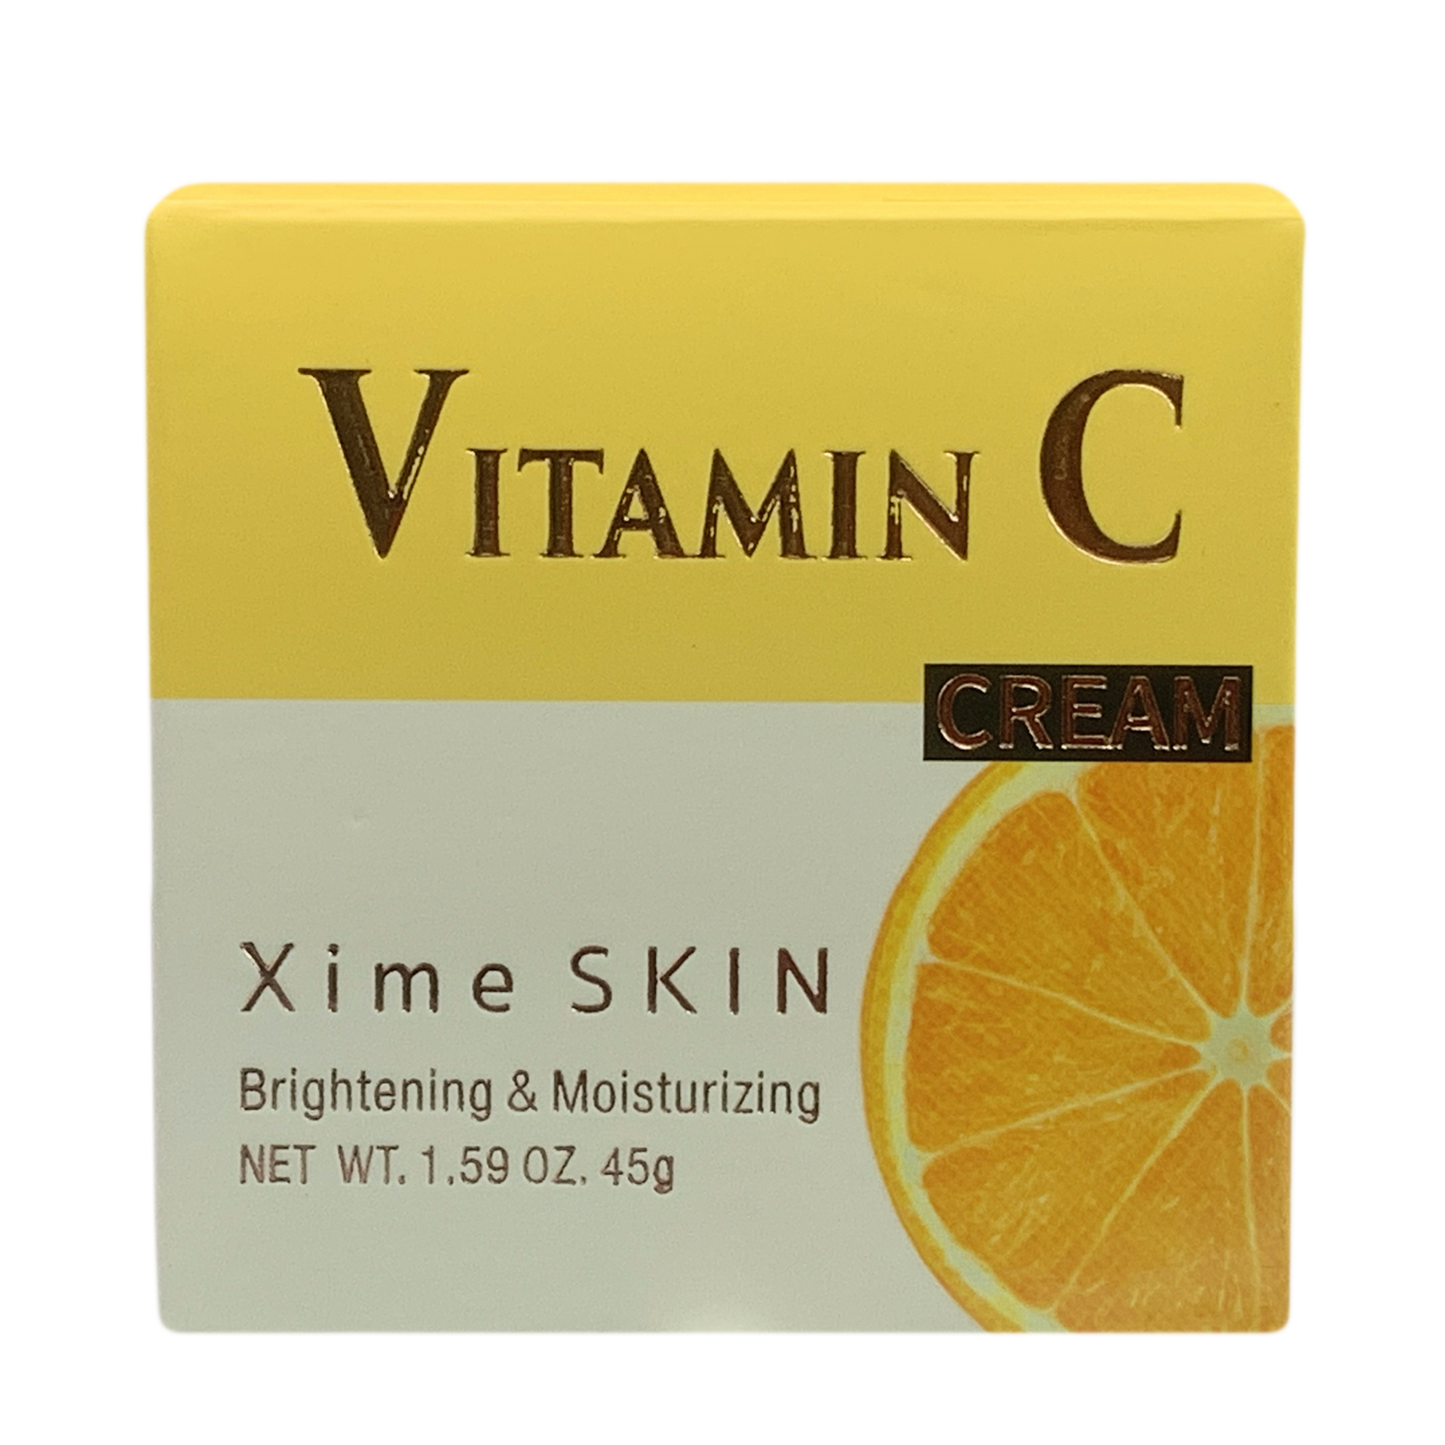 XS21-025 Xime Skin Vitamin C Brightening & Moisturizing Cream